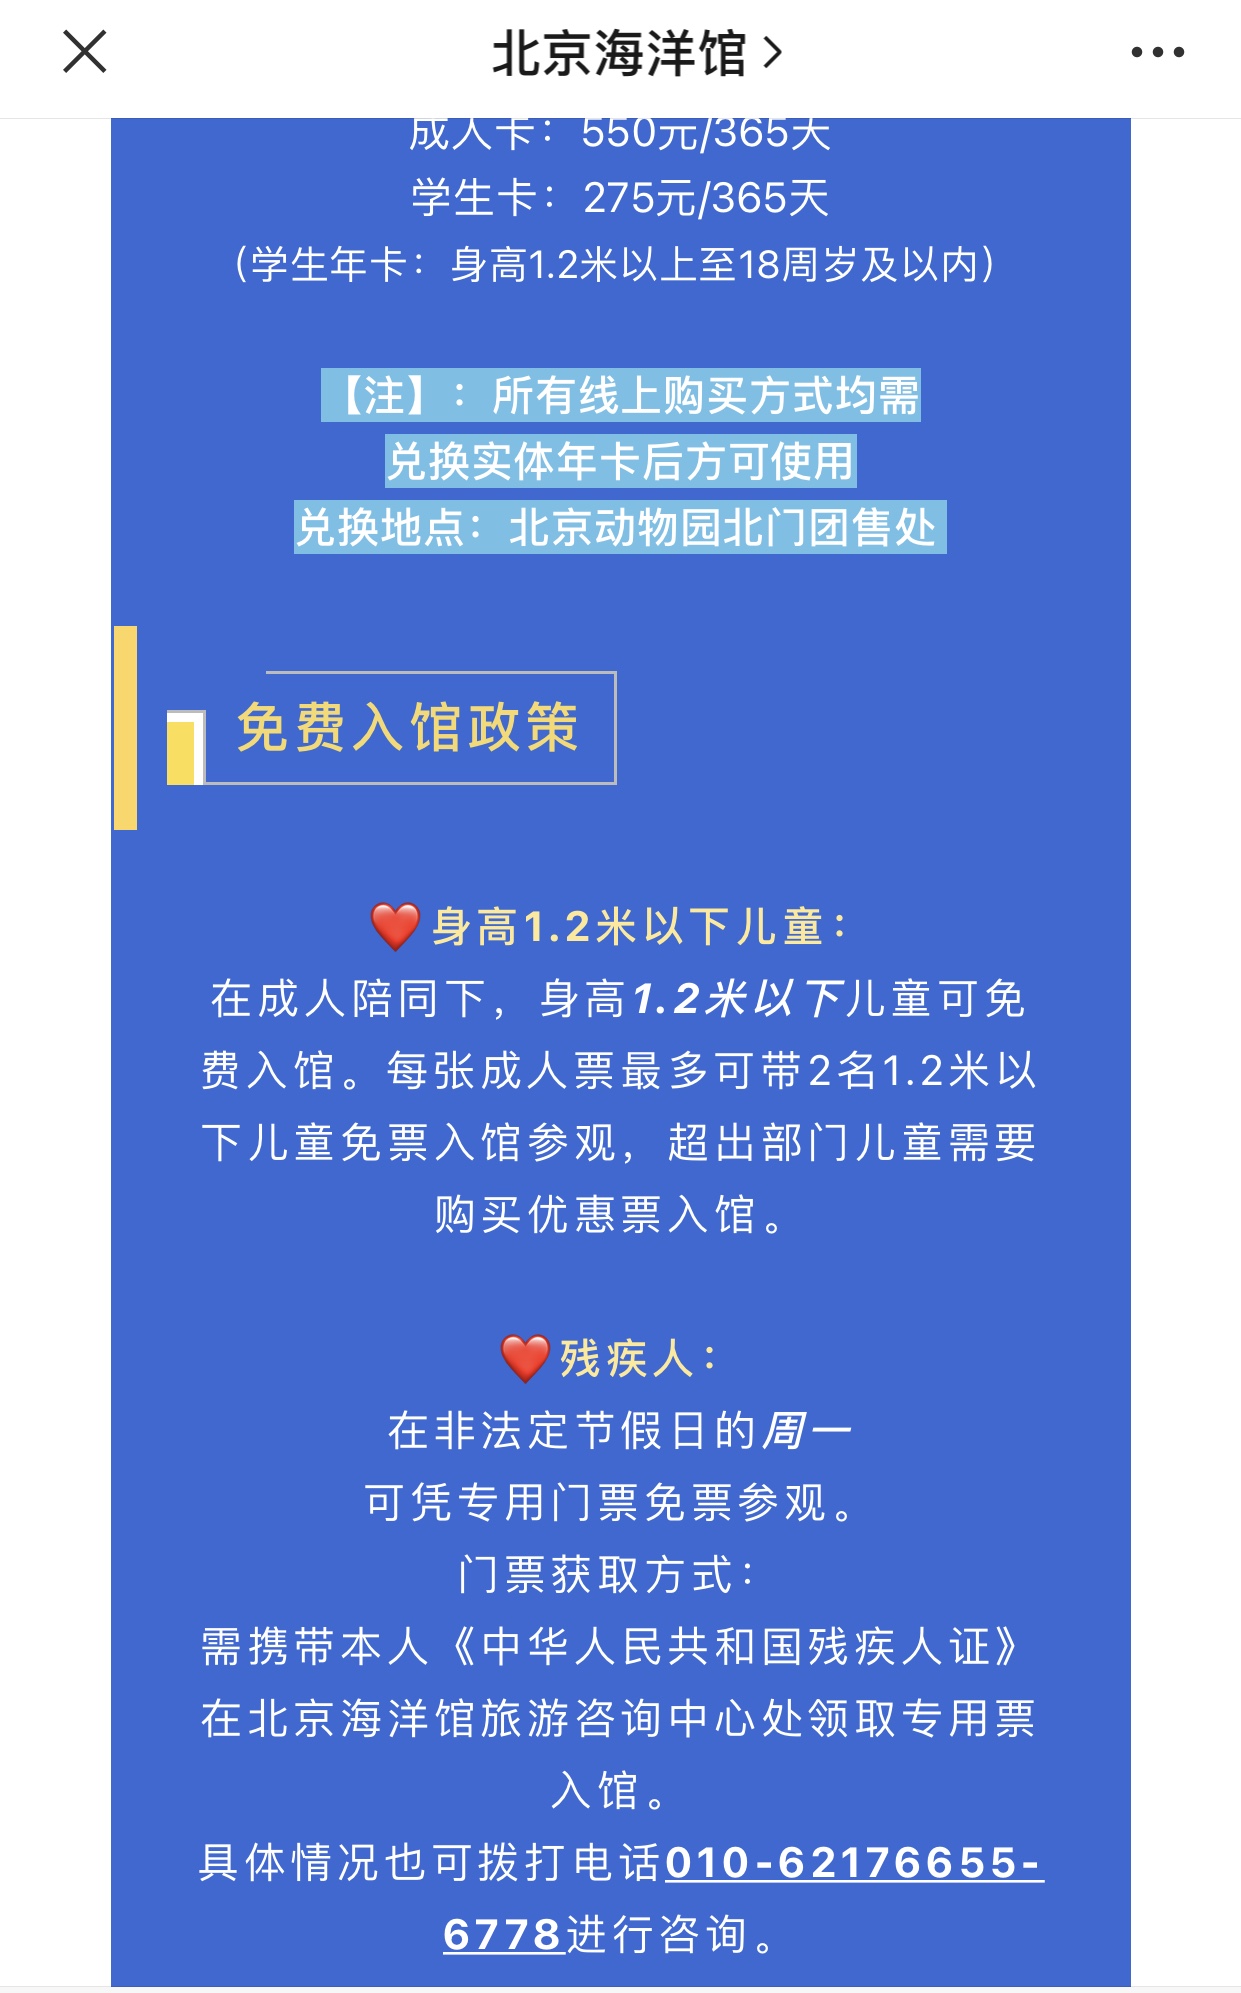 北京海洋馆可以1名成人带2名免票儿童。